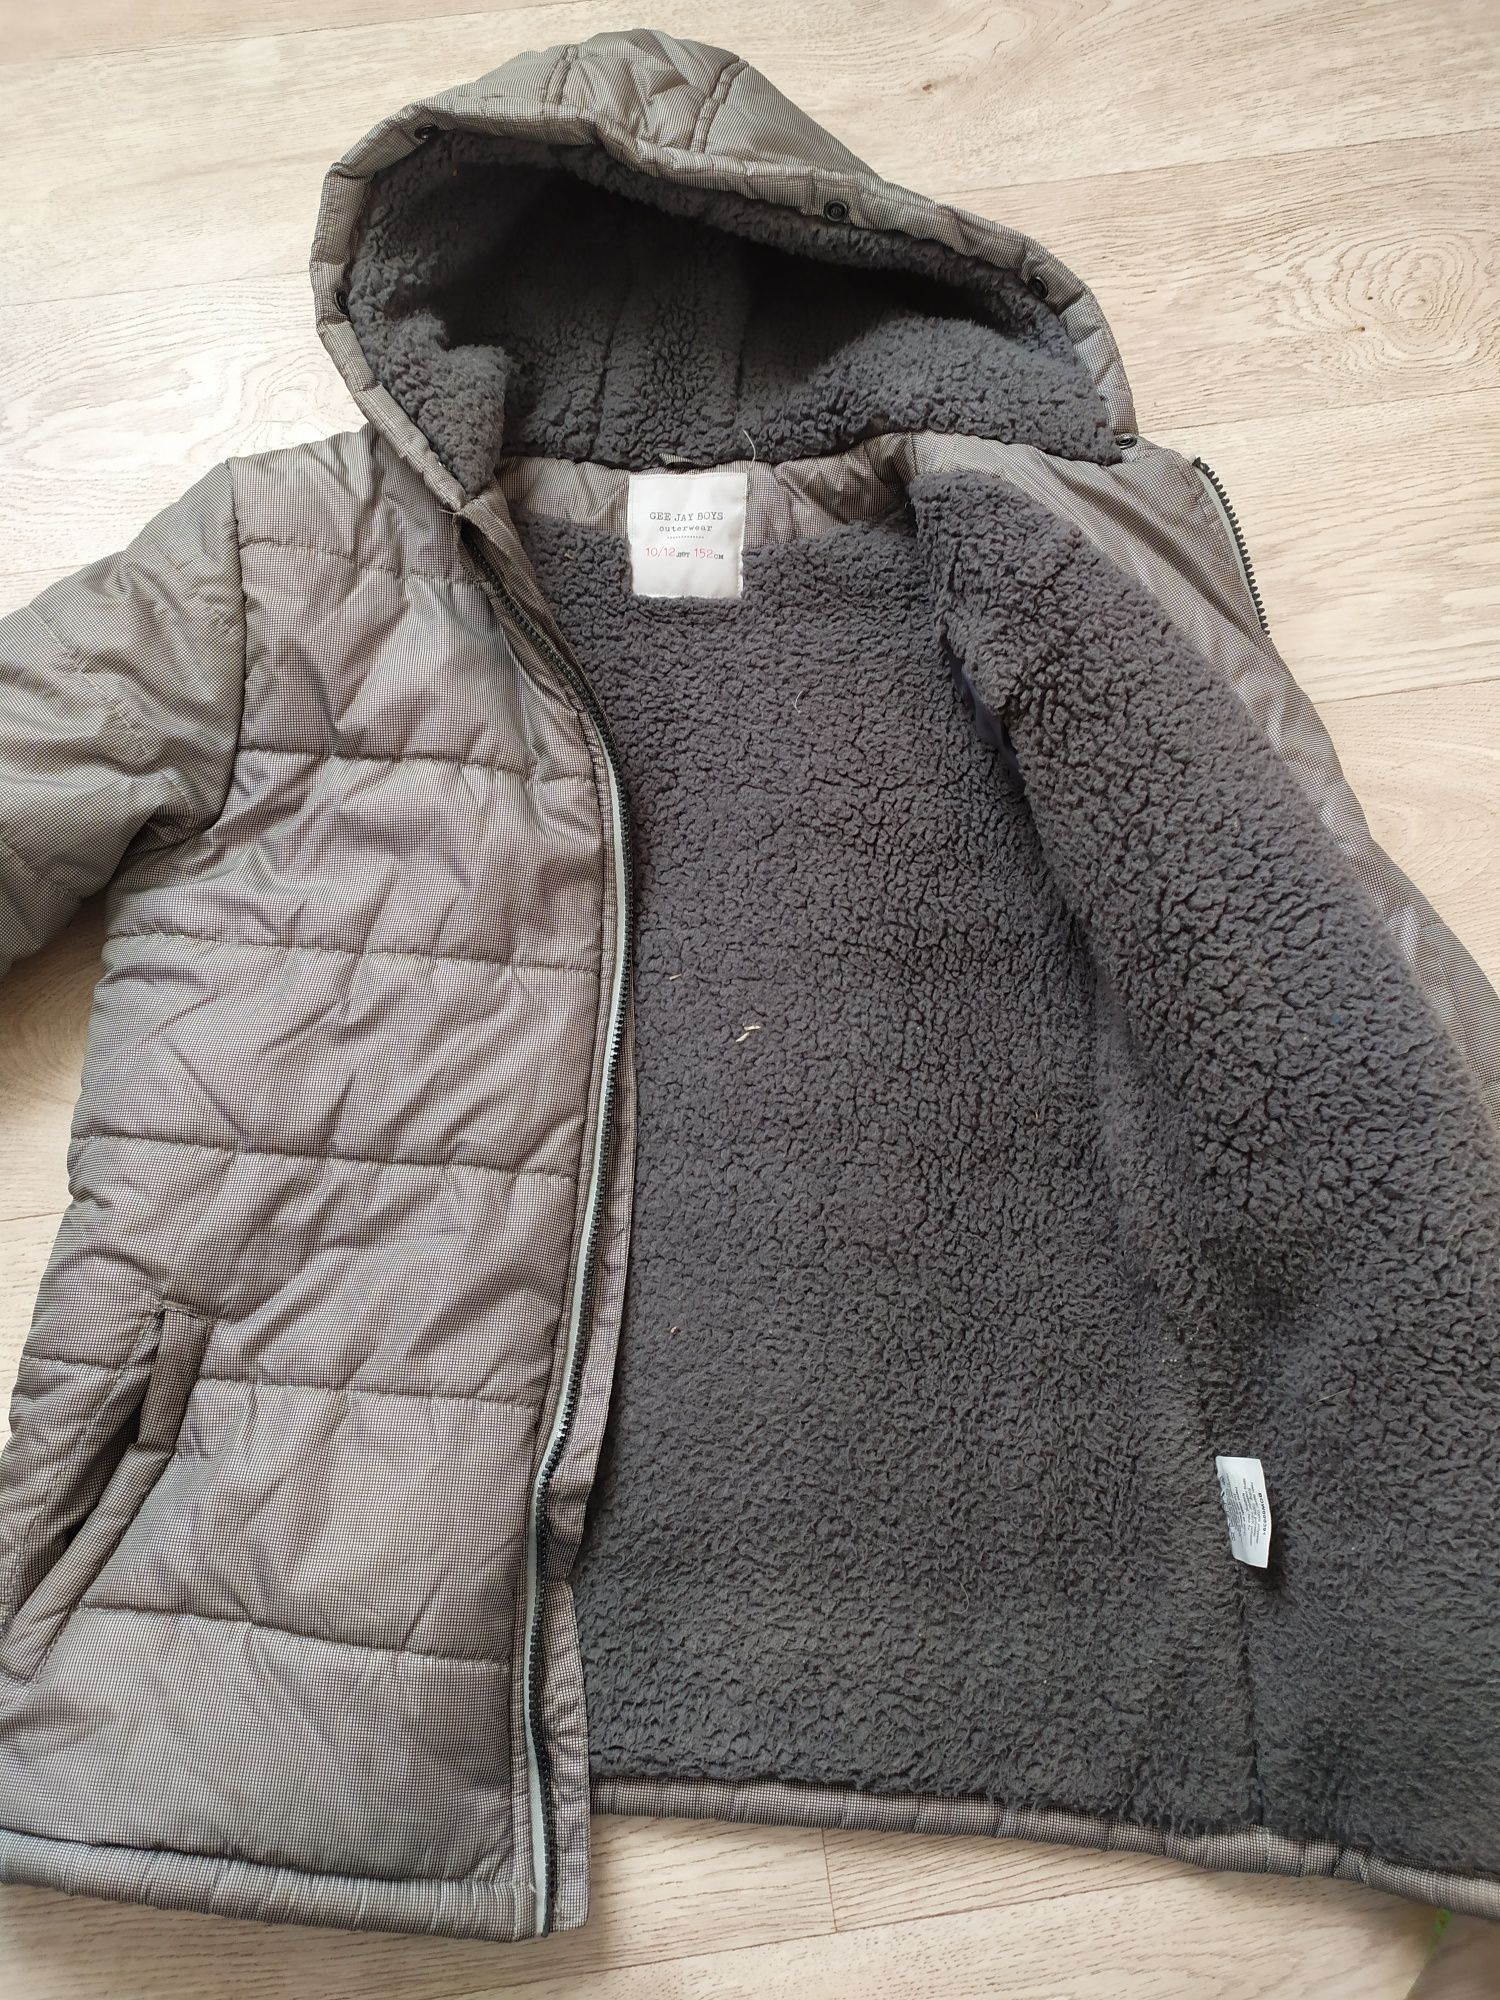 Теплая зимняя куртка на мальчика/подростка (152 см), лёгкая по весу